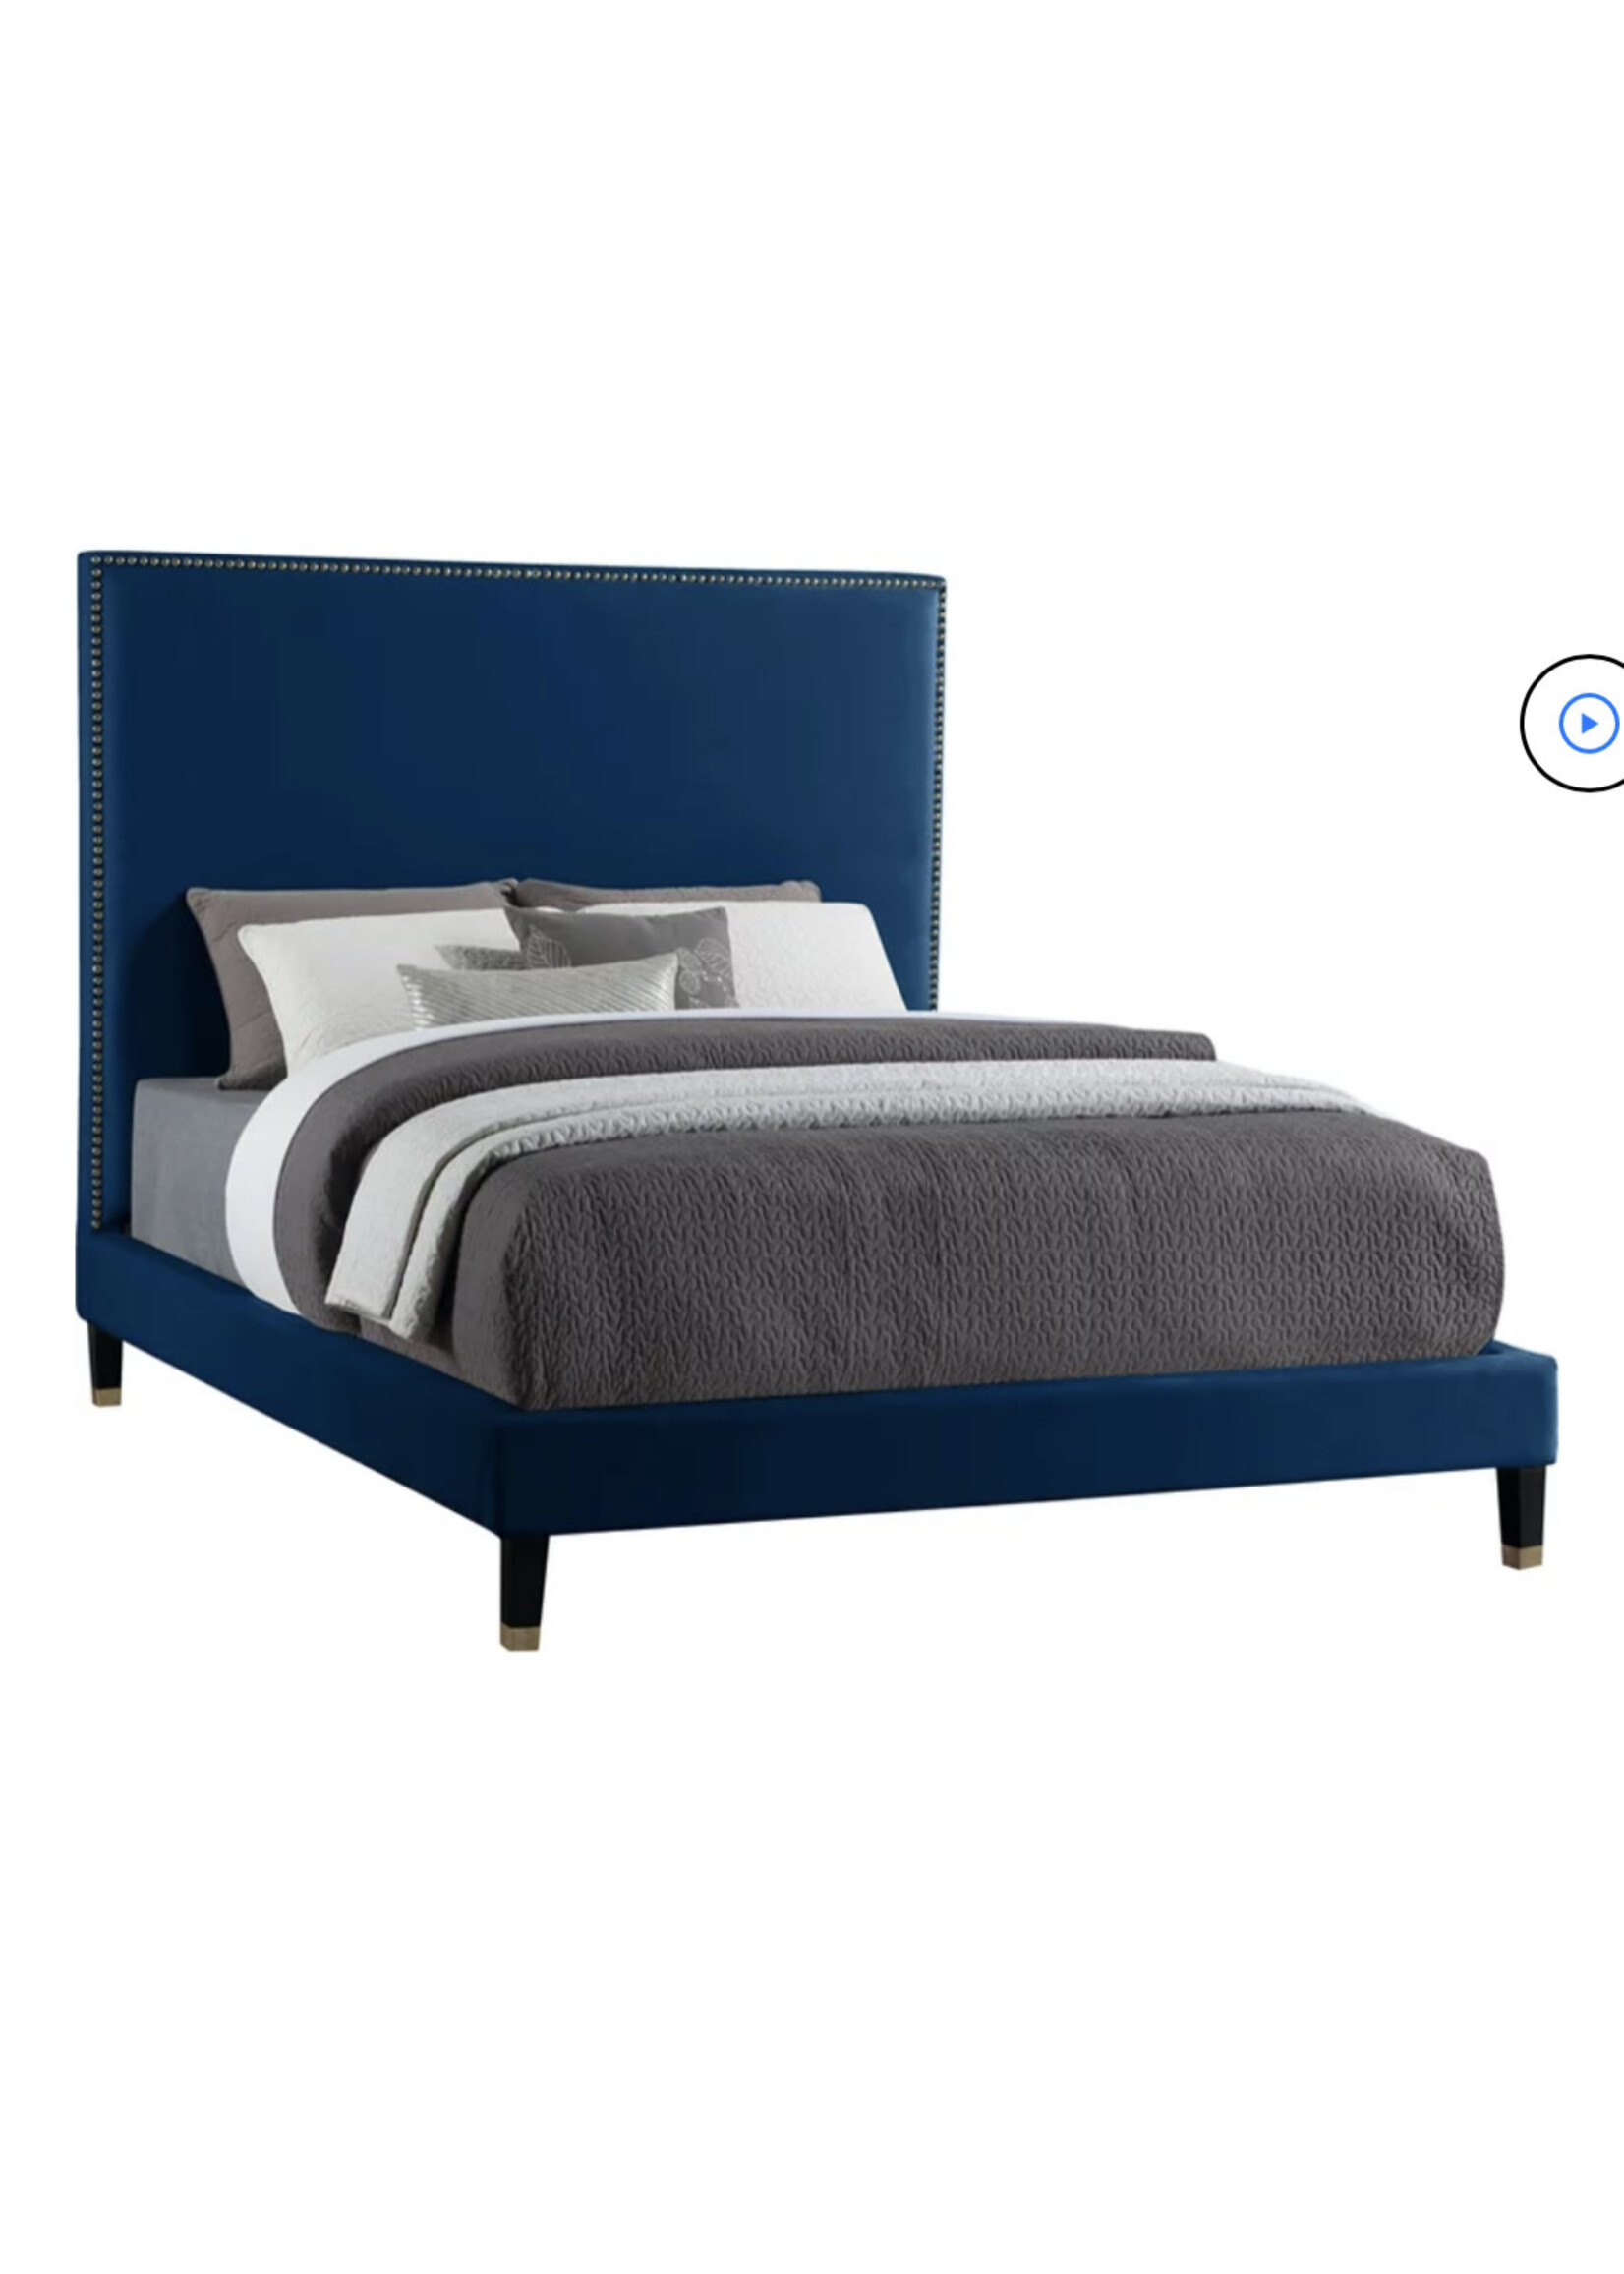 Meridian Furniture - Harlie Navy King Bed Frame